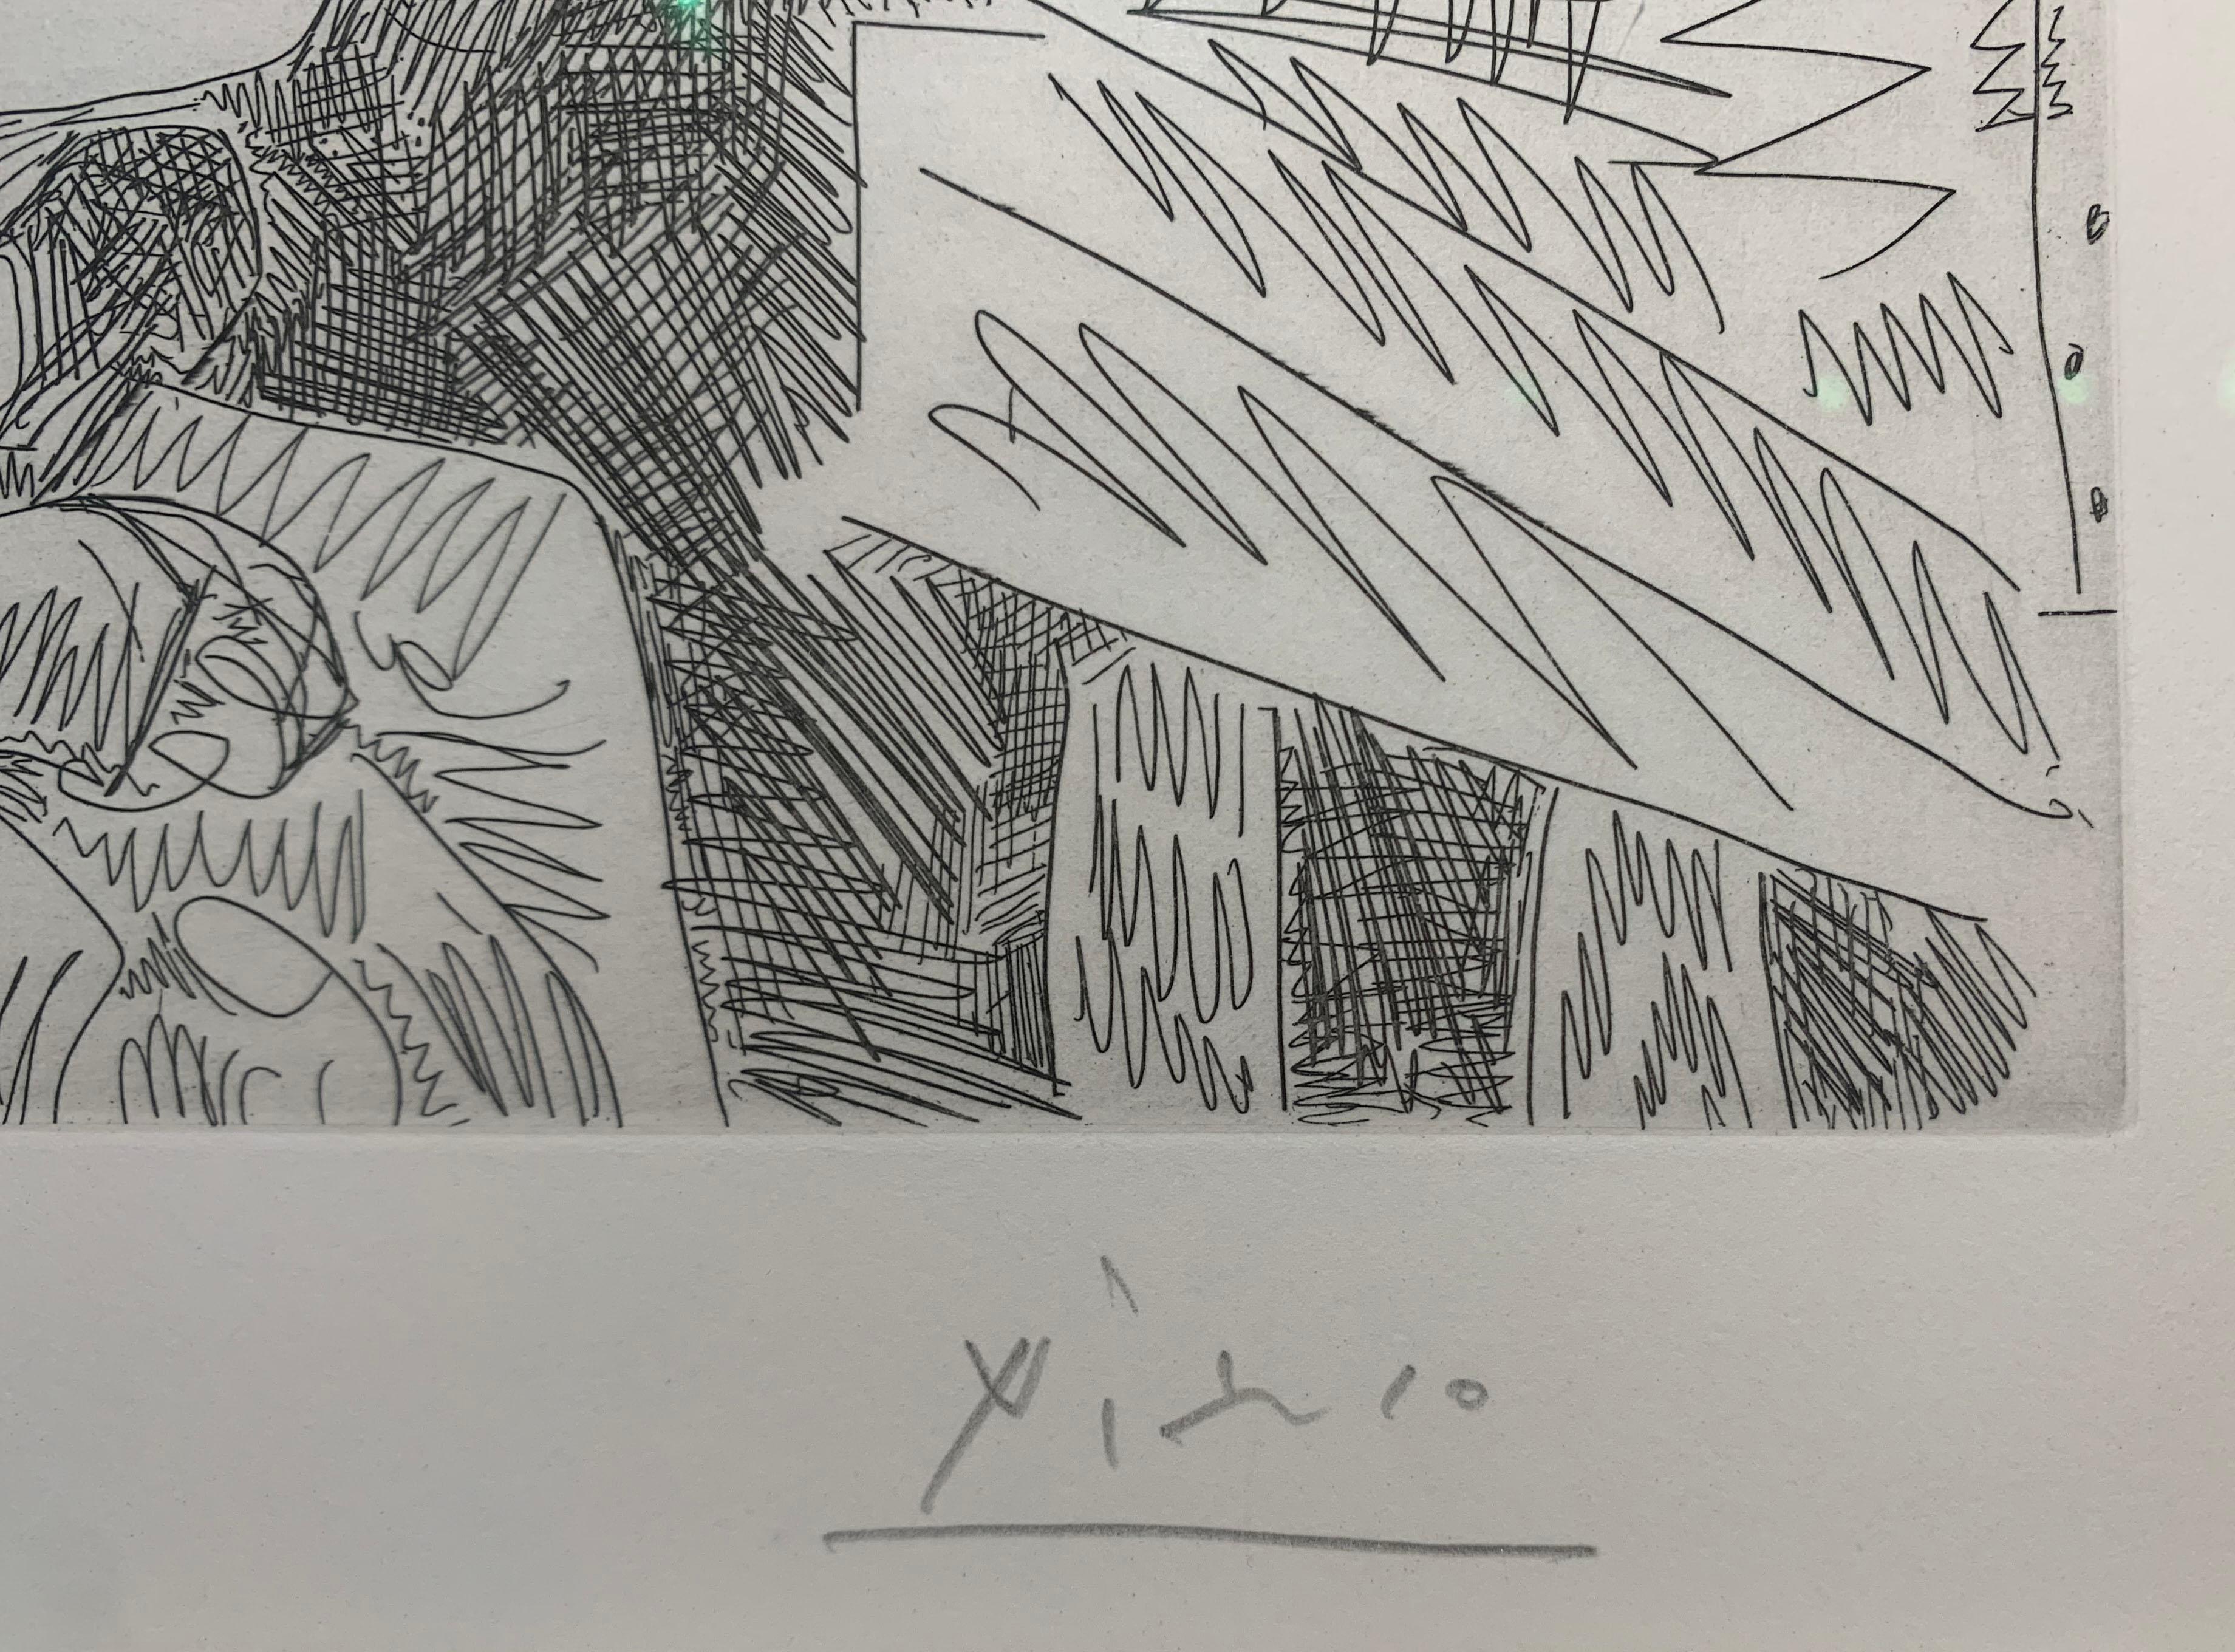 Gravure originale, technique de l'eau-forte et pointe sèche, 1968, tirée à 50 exemplaires numérotée et signée au crayon par l'artiste.
Encadrée avec un cadre en bois et un verre musée.
Numéro 35/50.
Ref : Bloch N° 1826.